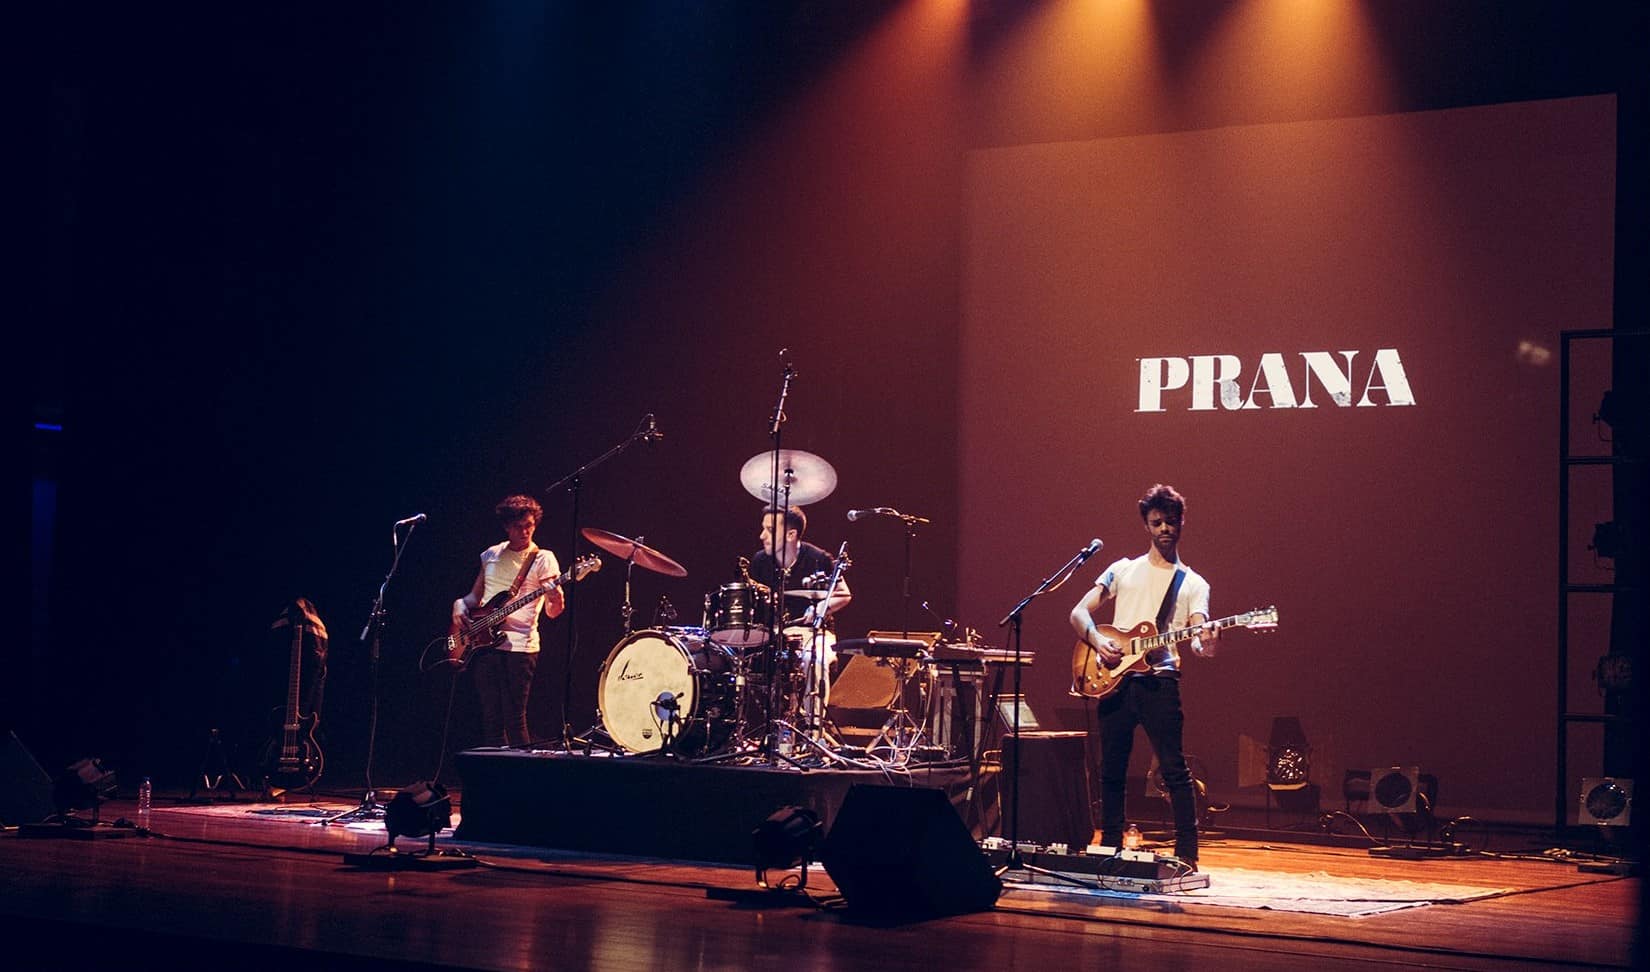 Os Prana apresentam o seu terceiro e mais recente álbum